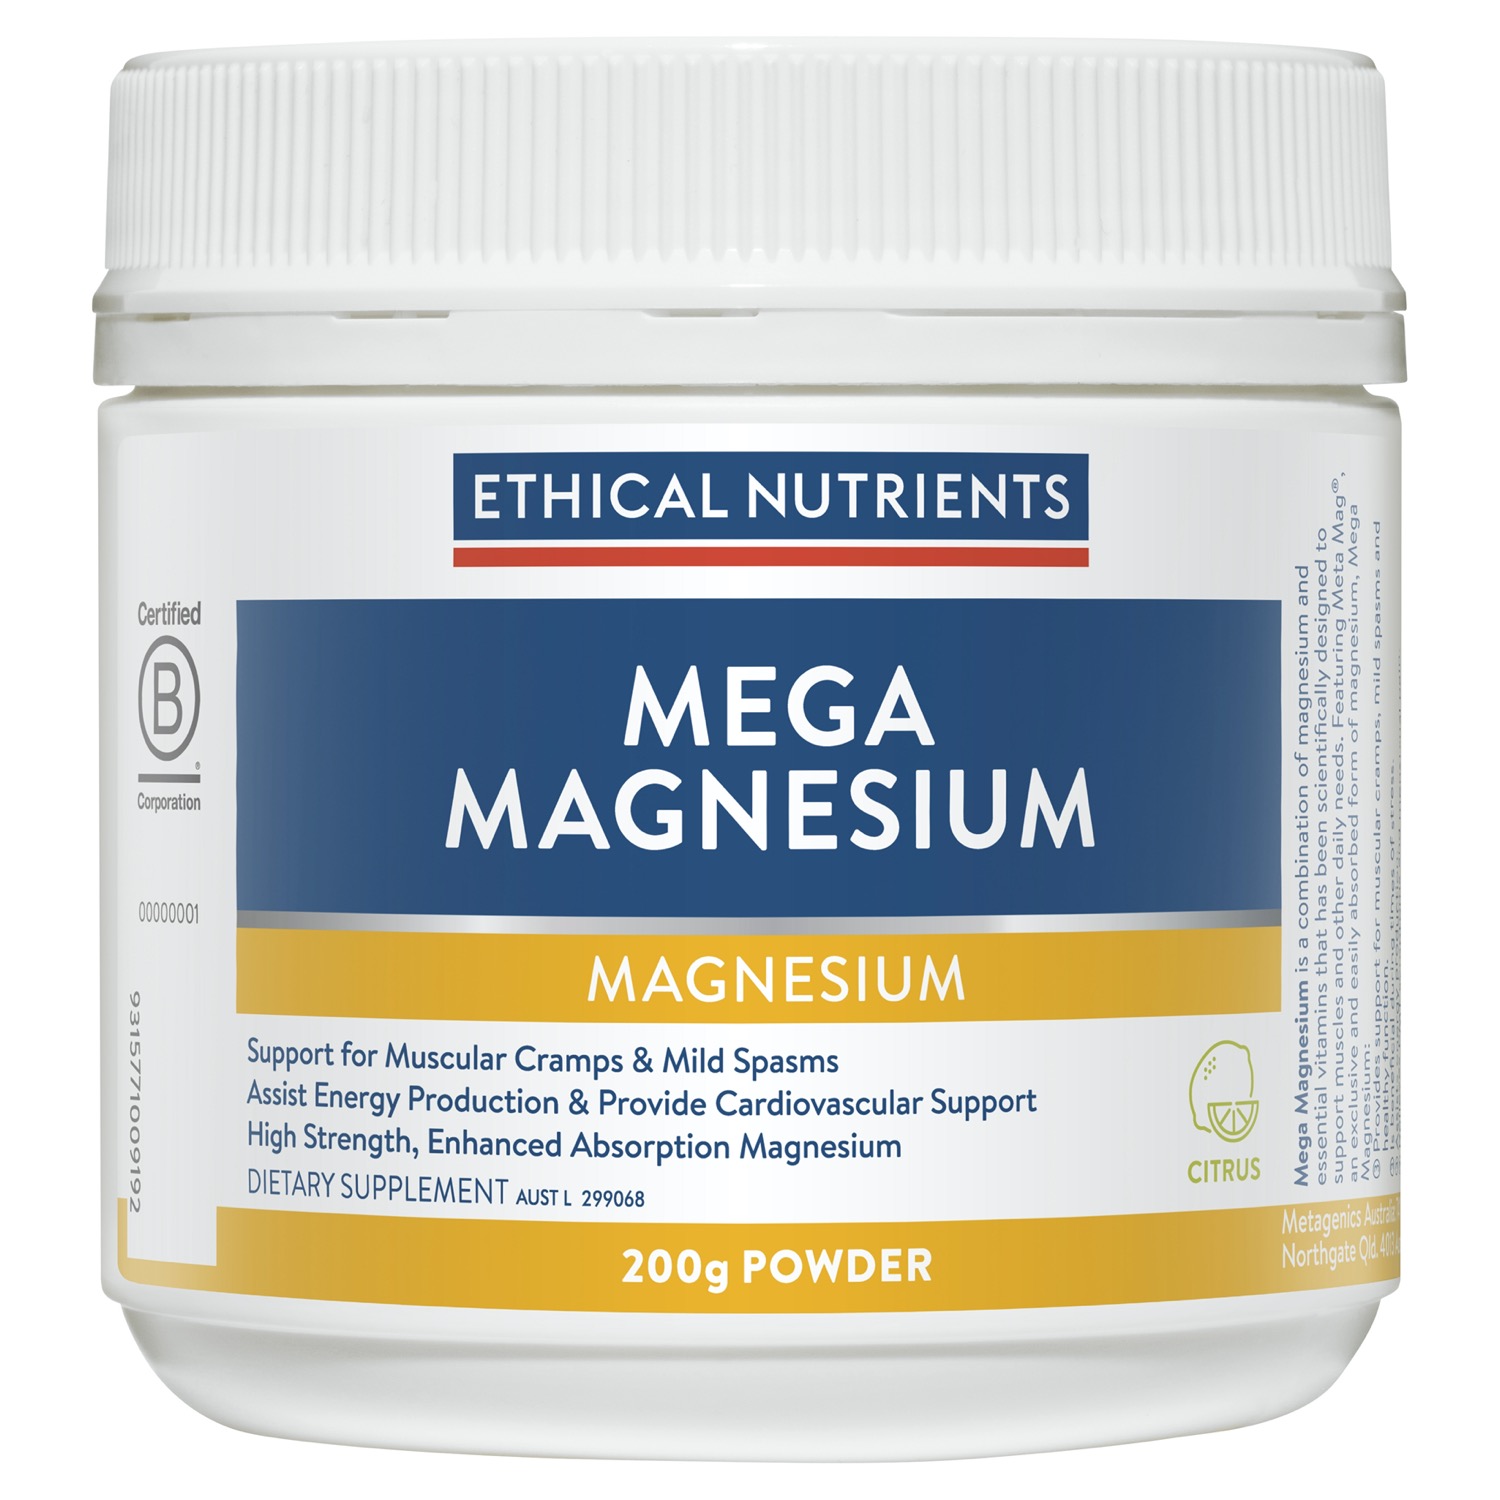 Ethical Nutrients Mega Magnesium Citrus Powder 200g